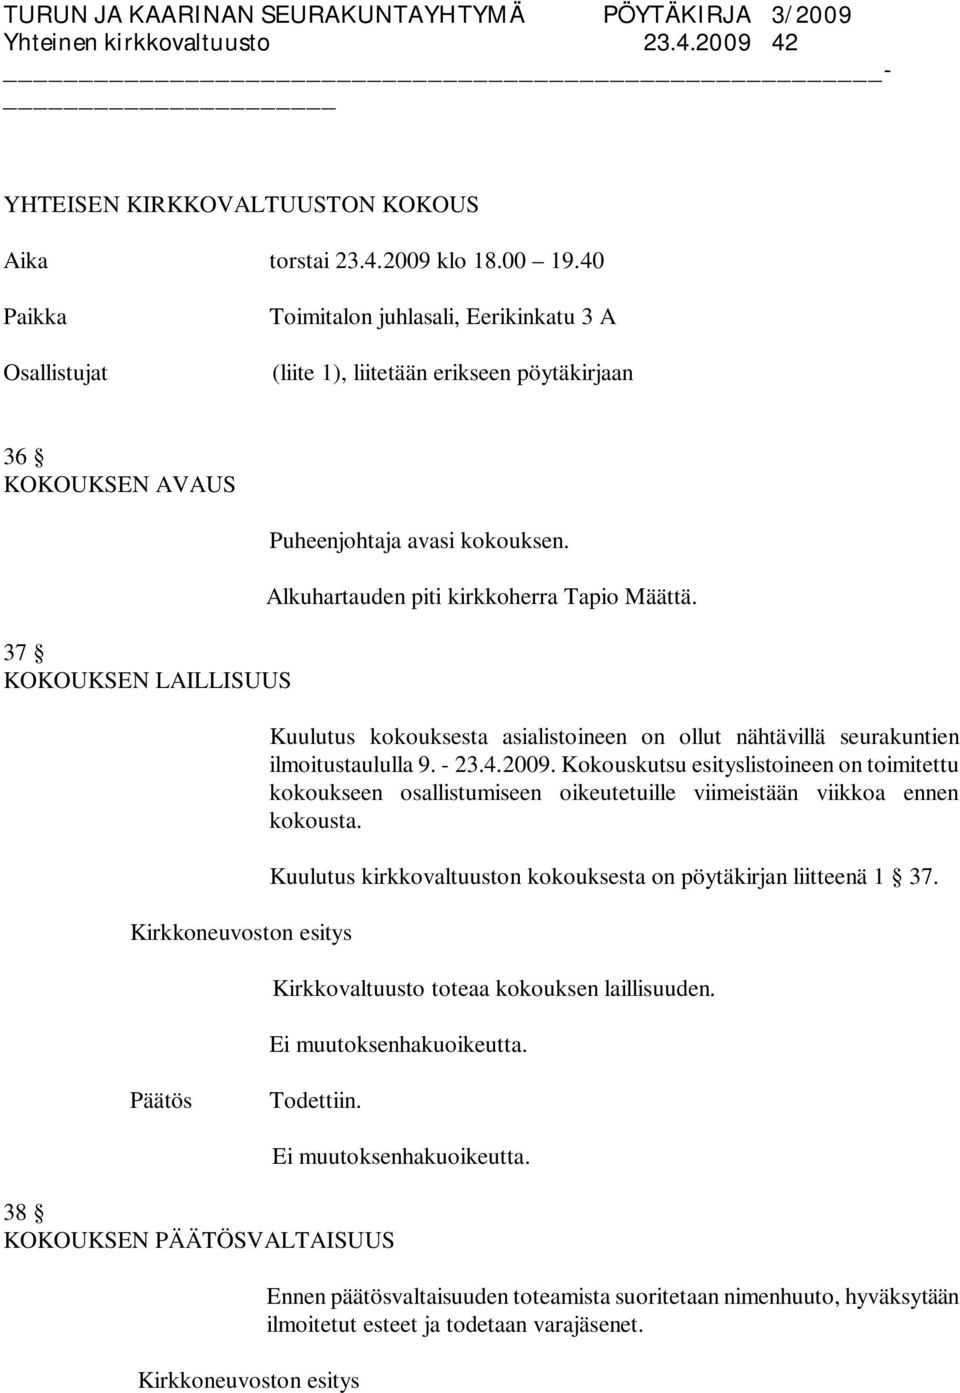 Alkuhartauden piti kirkkoherra Tapio Määttä. Kuulutus kokouksesta asialistoineen on ollut nähtävillä seurakuntien ilmoitustaululla 9. - 23.4.2009.